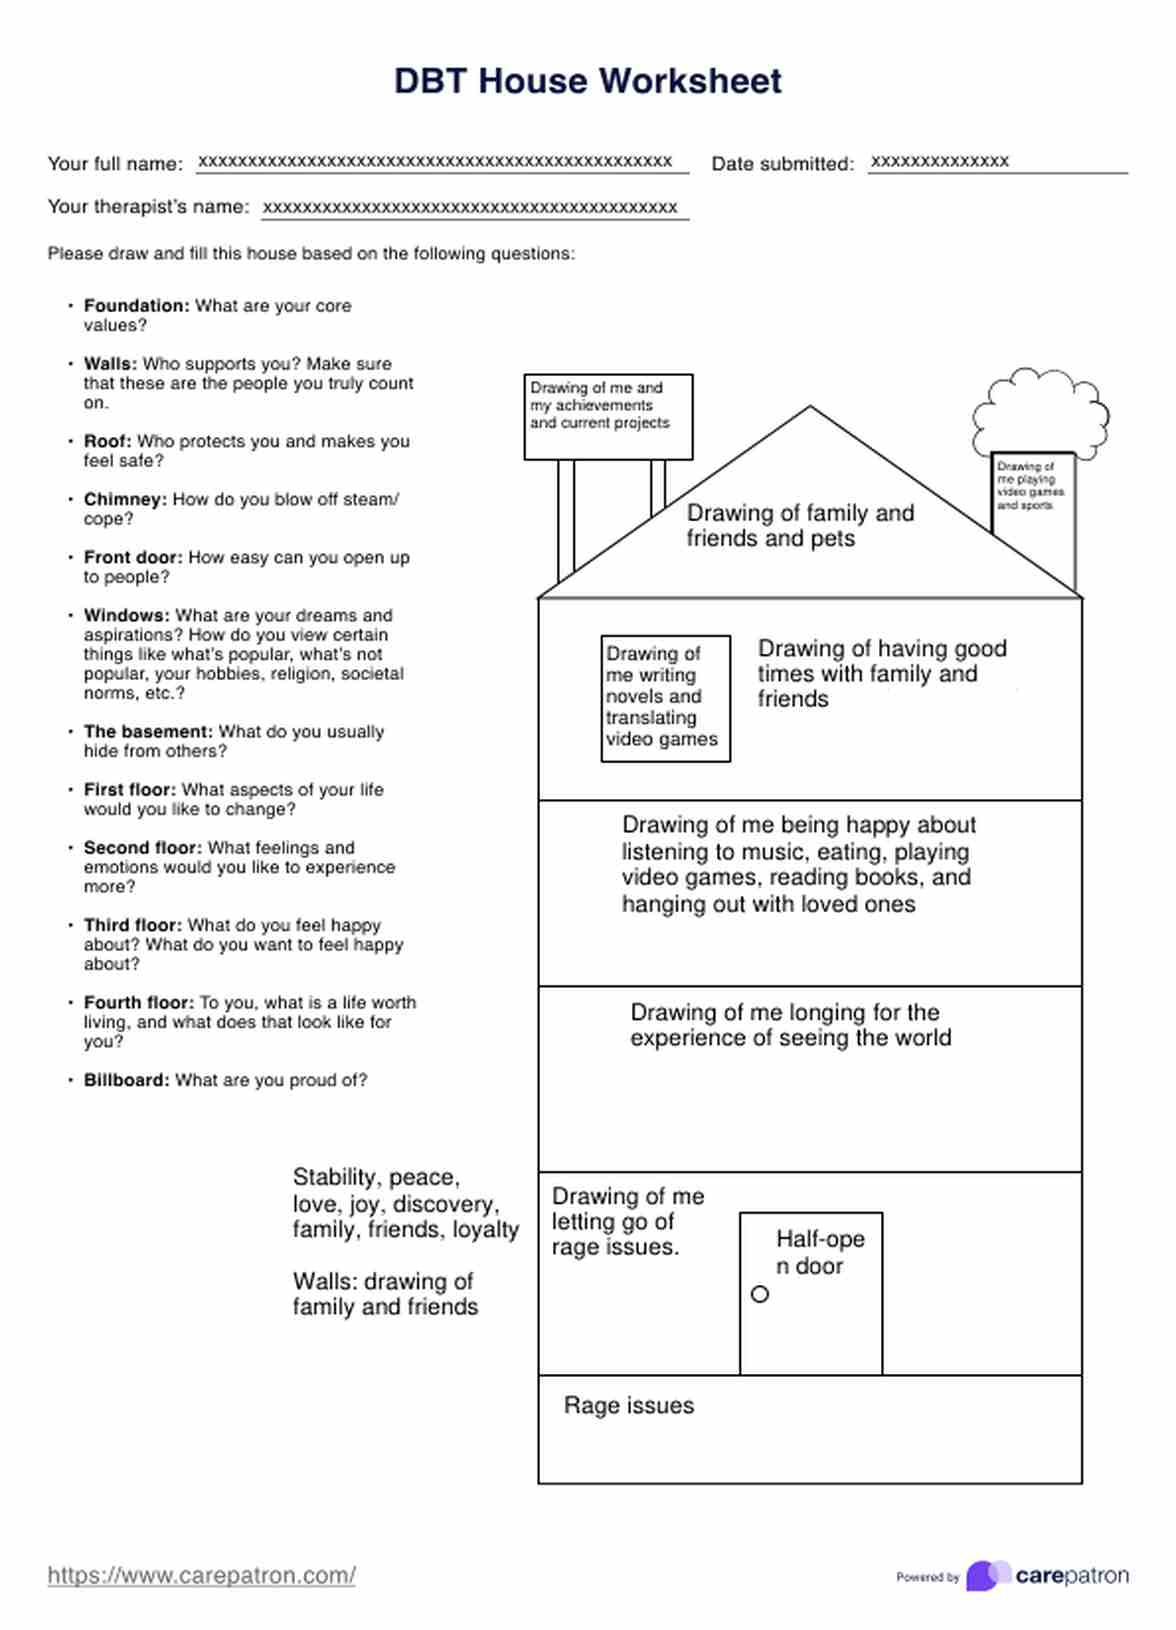 DBT House PDF PDF Example